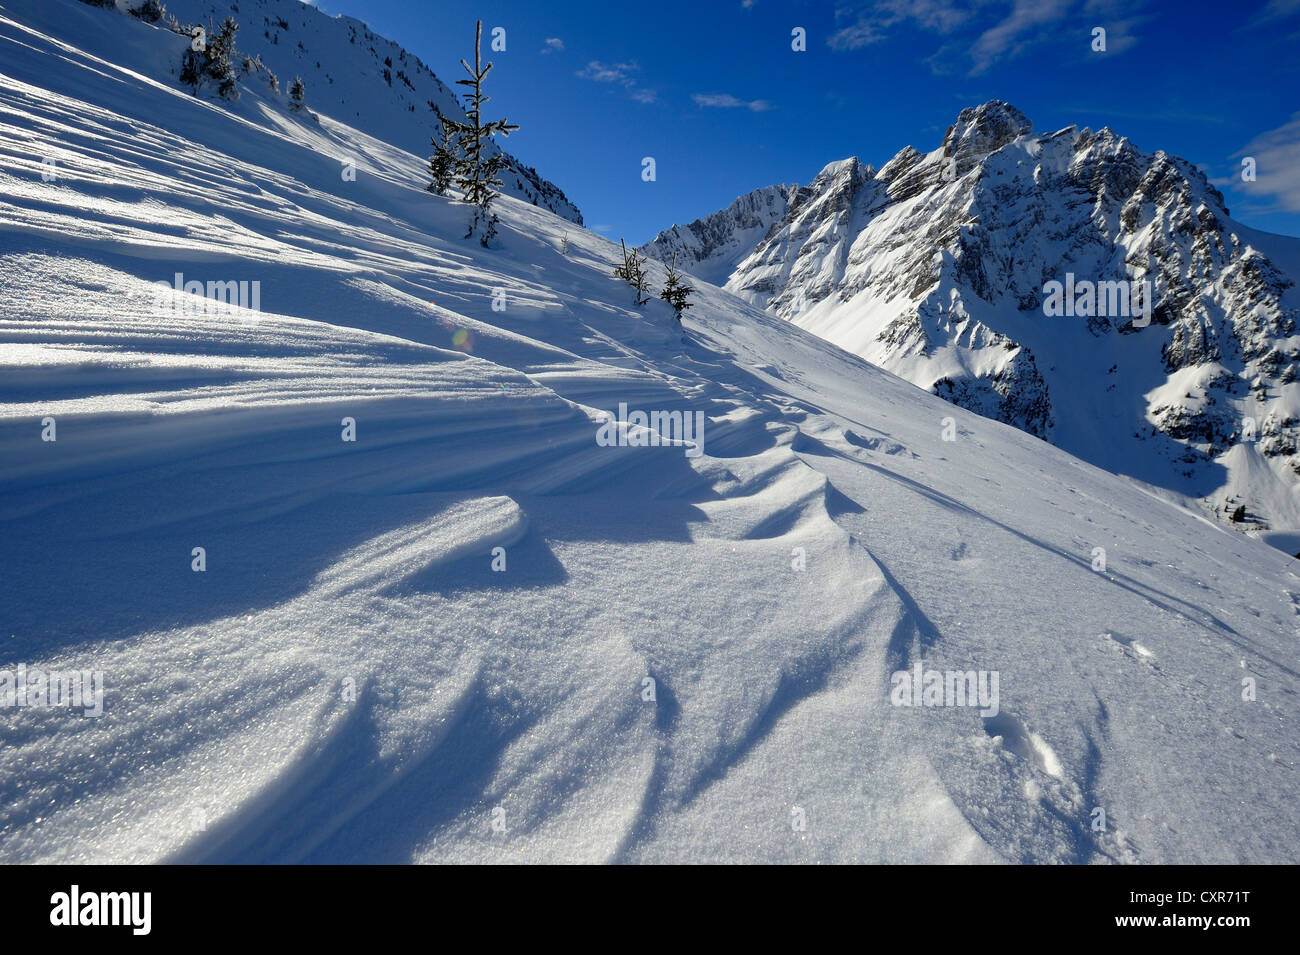 Paysage d'hiver avec des formations de neige et des pics de montagne, Firtzstock, Glaris, Suisse orientale, Suisse, Europe Banque D'Images